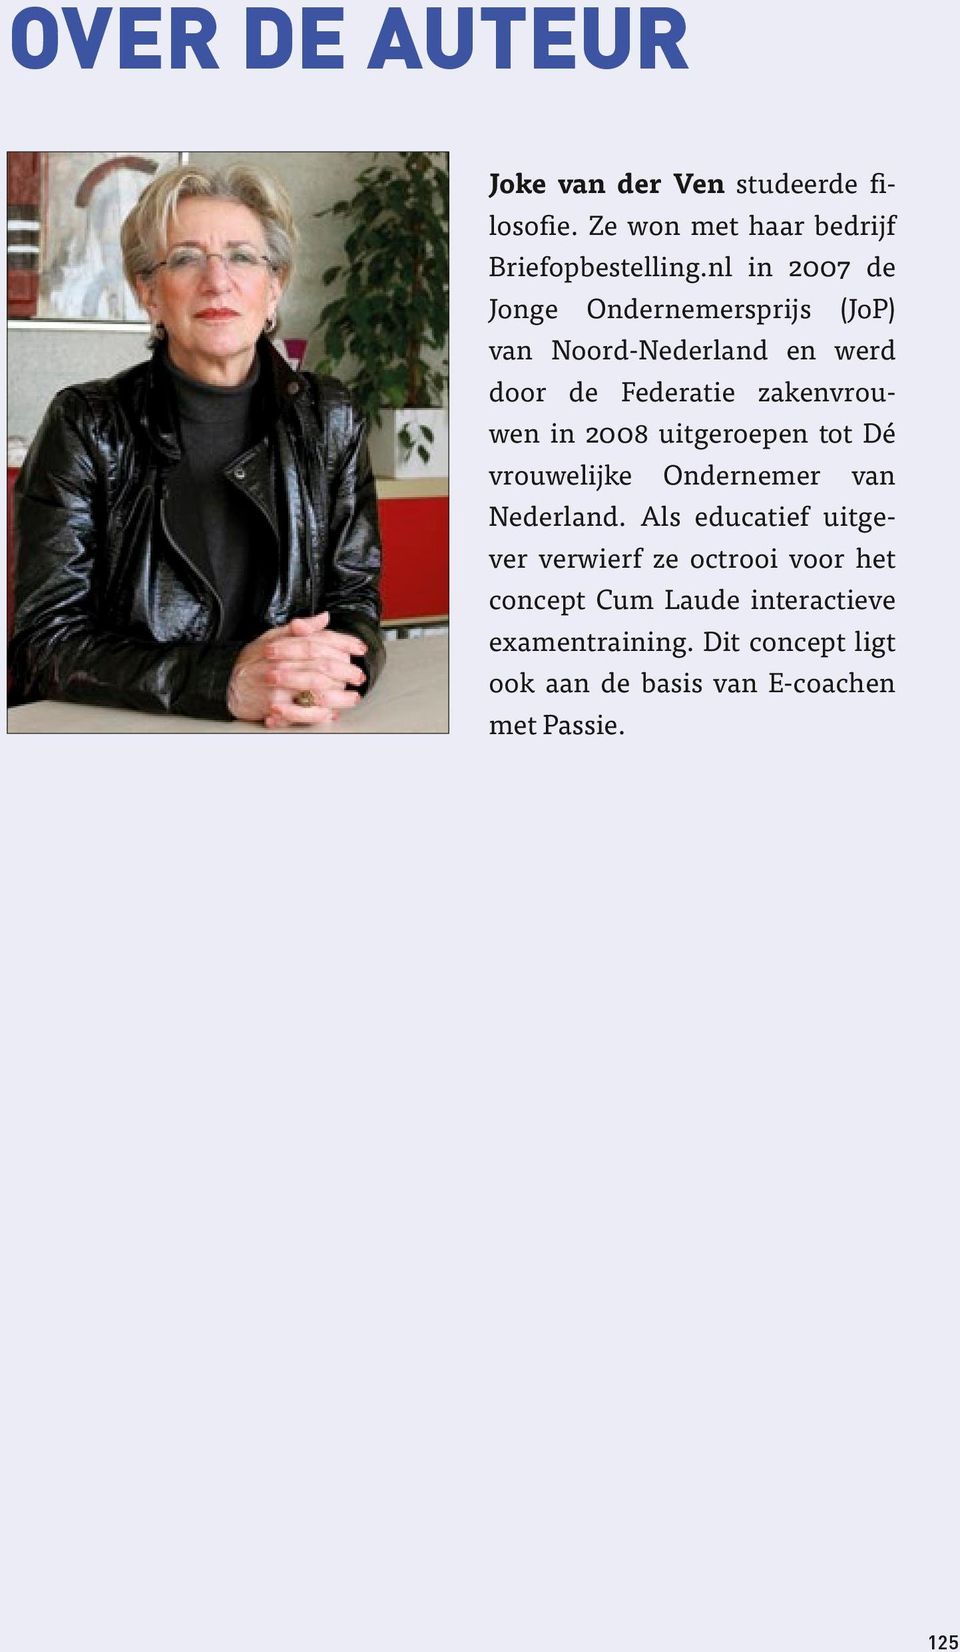 2008 uitgeroepen tot Dé vrouwelijke Ondernemer van Nederland.